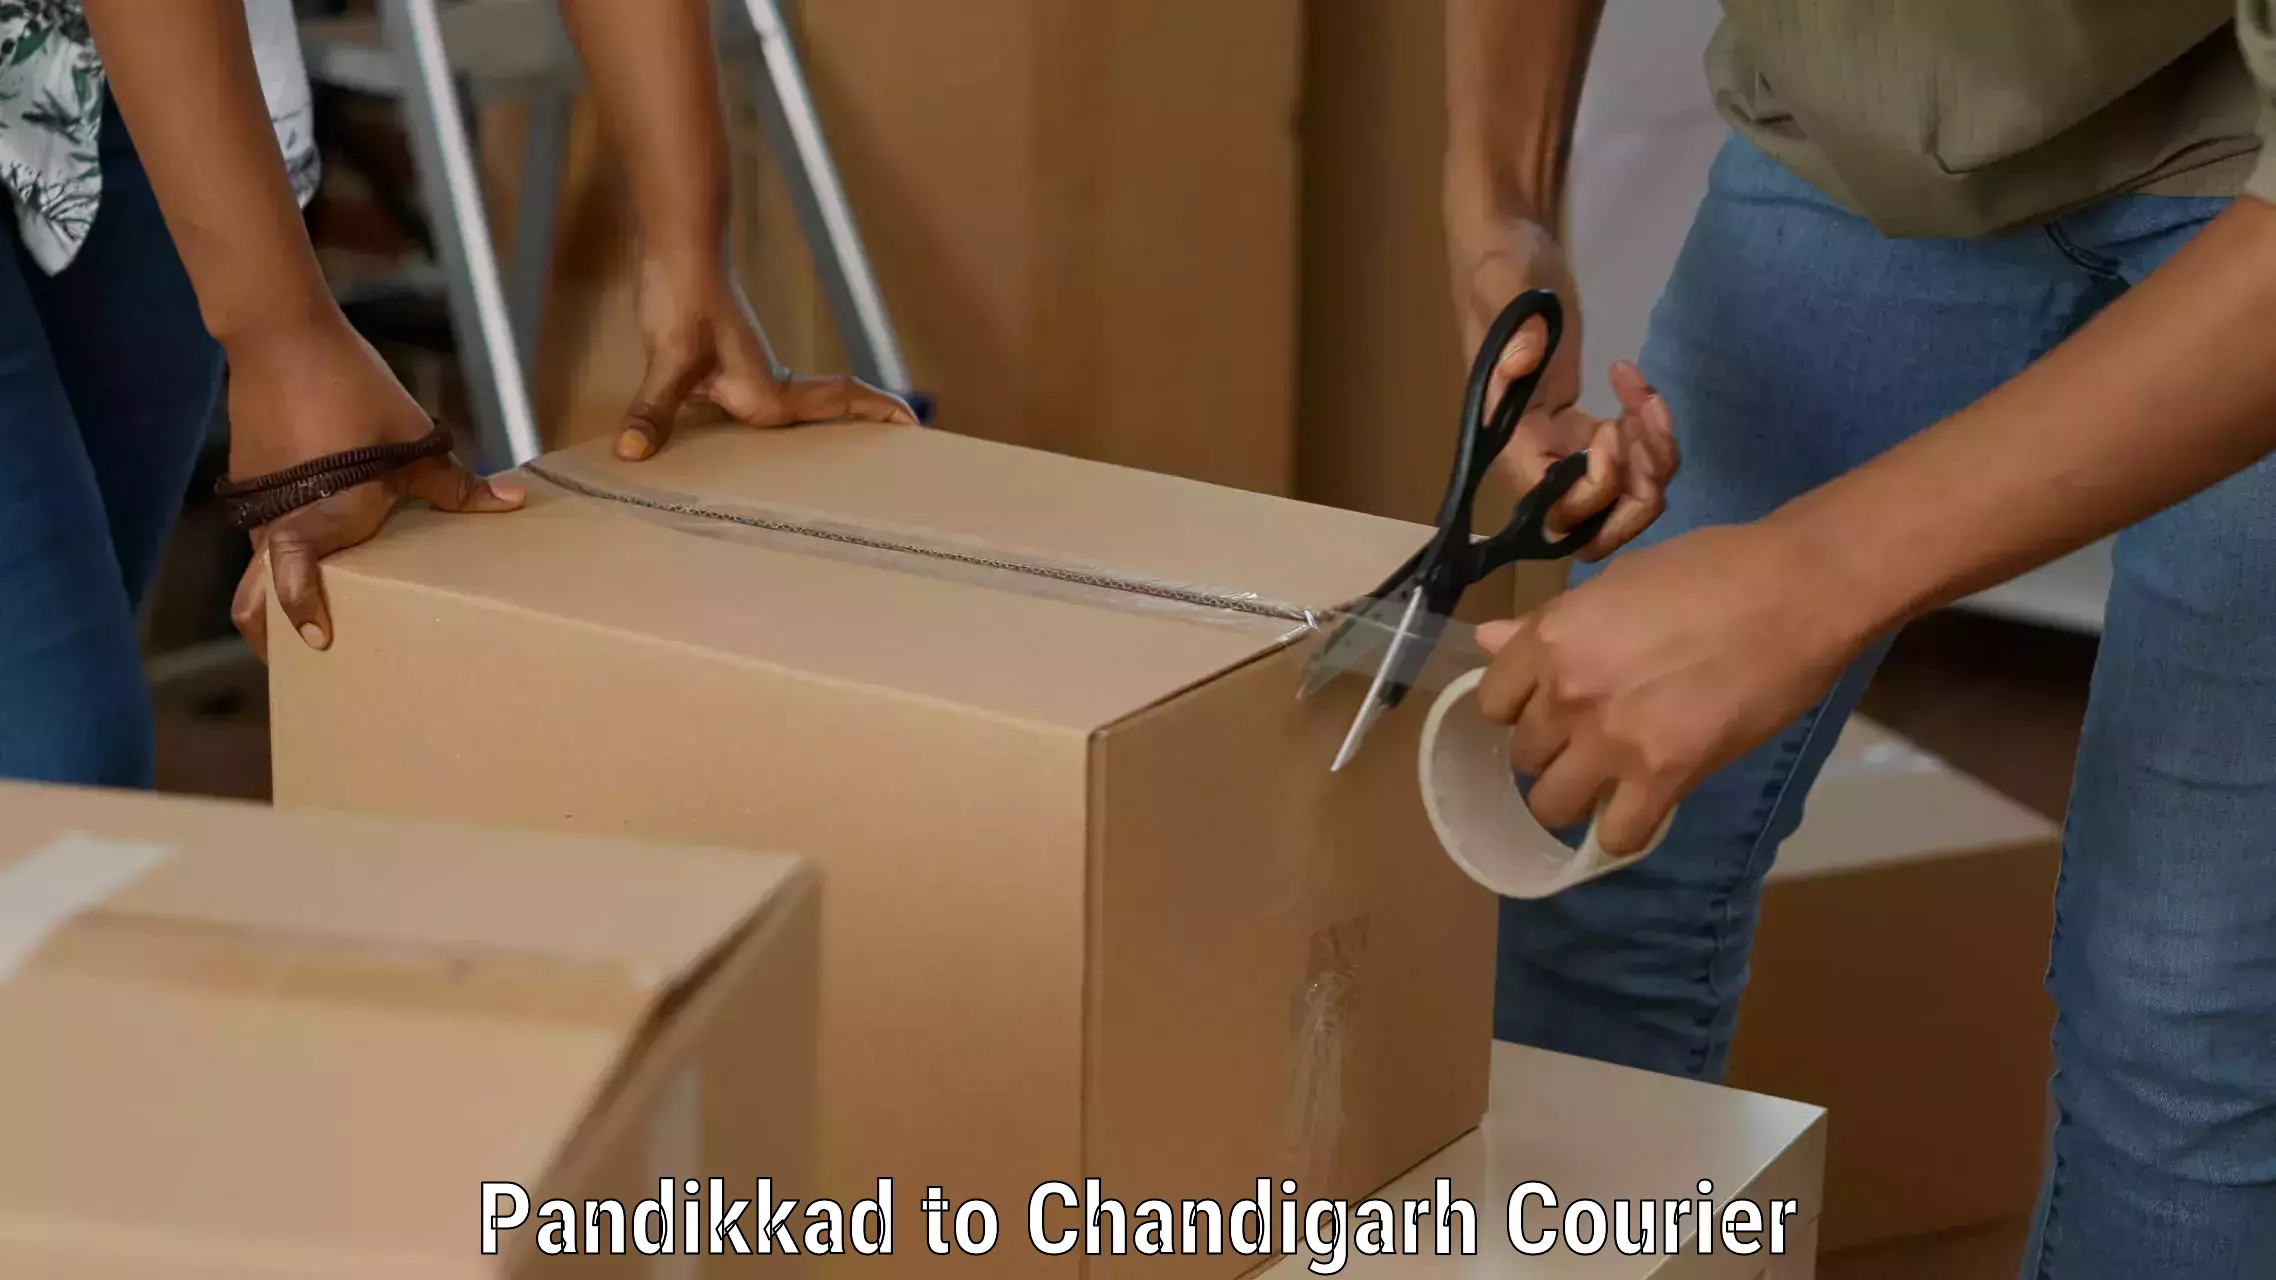 Quick dispatch service Pandikkad to Panjab University Chandigarh